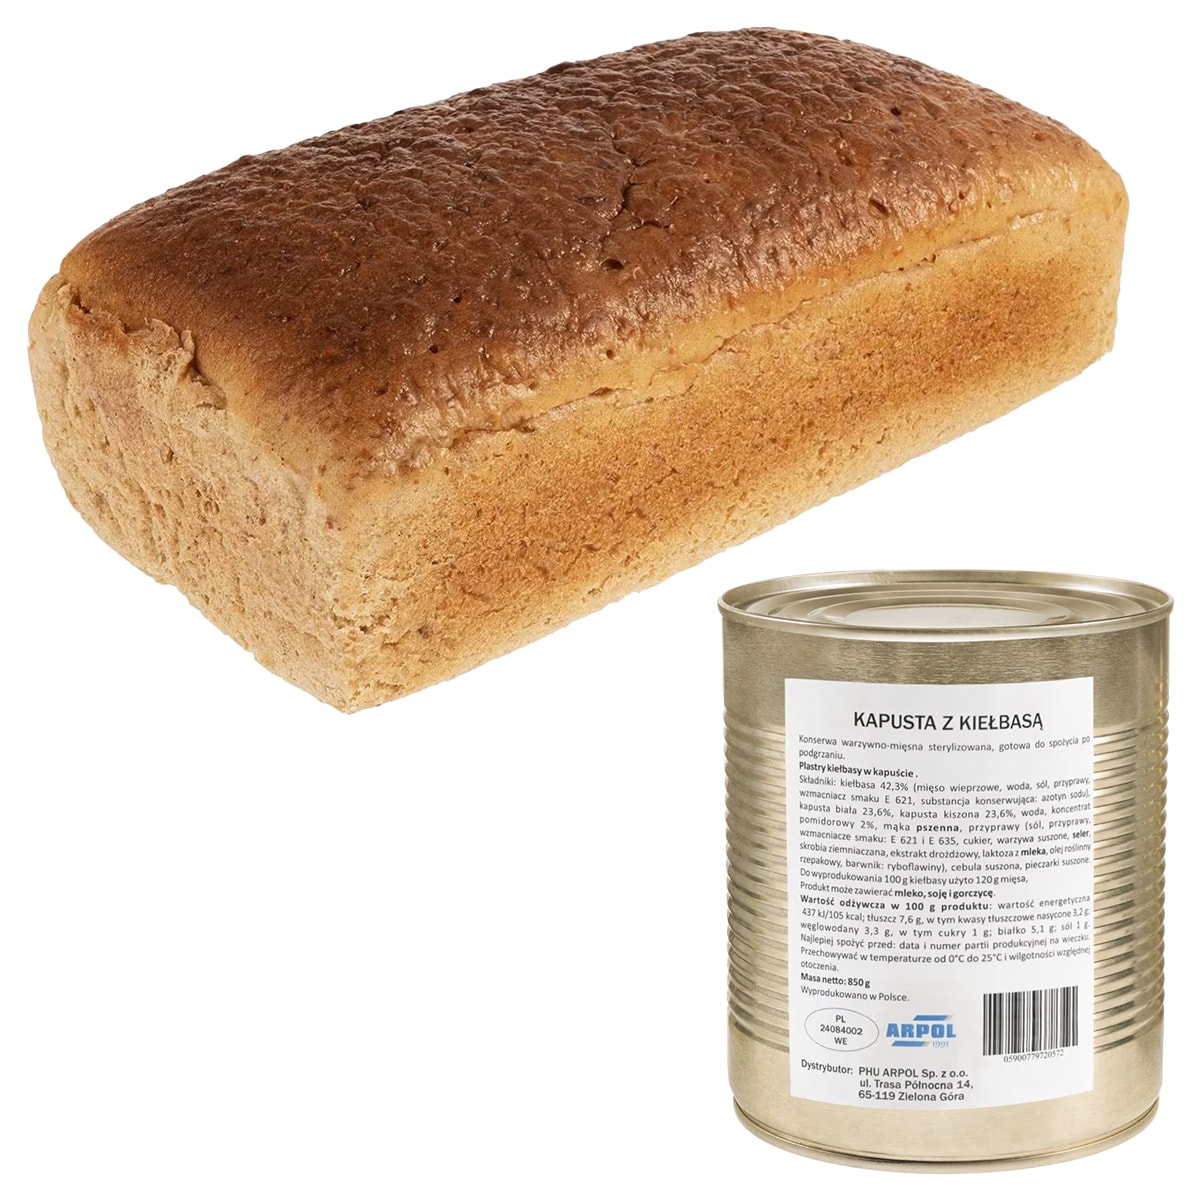 Питльований хліб 700 г + капуста з ковбасою Arpol 850 г - набір